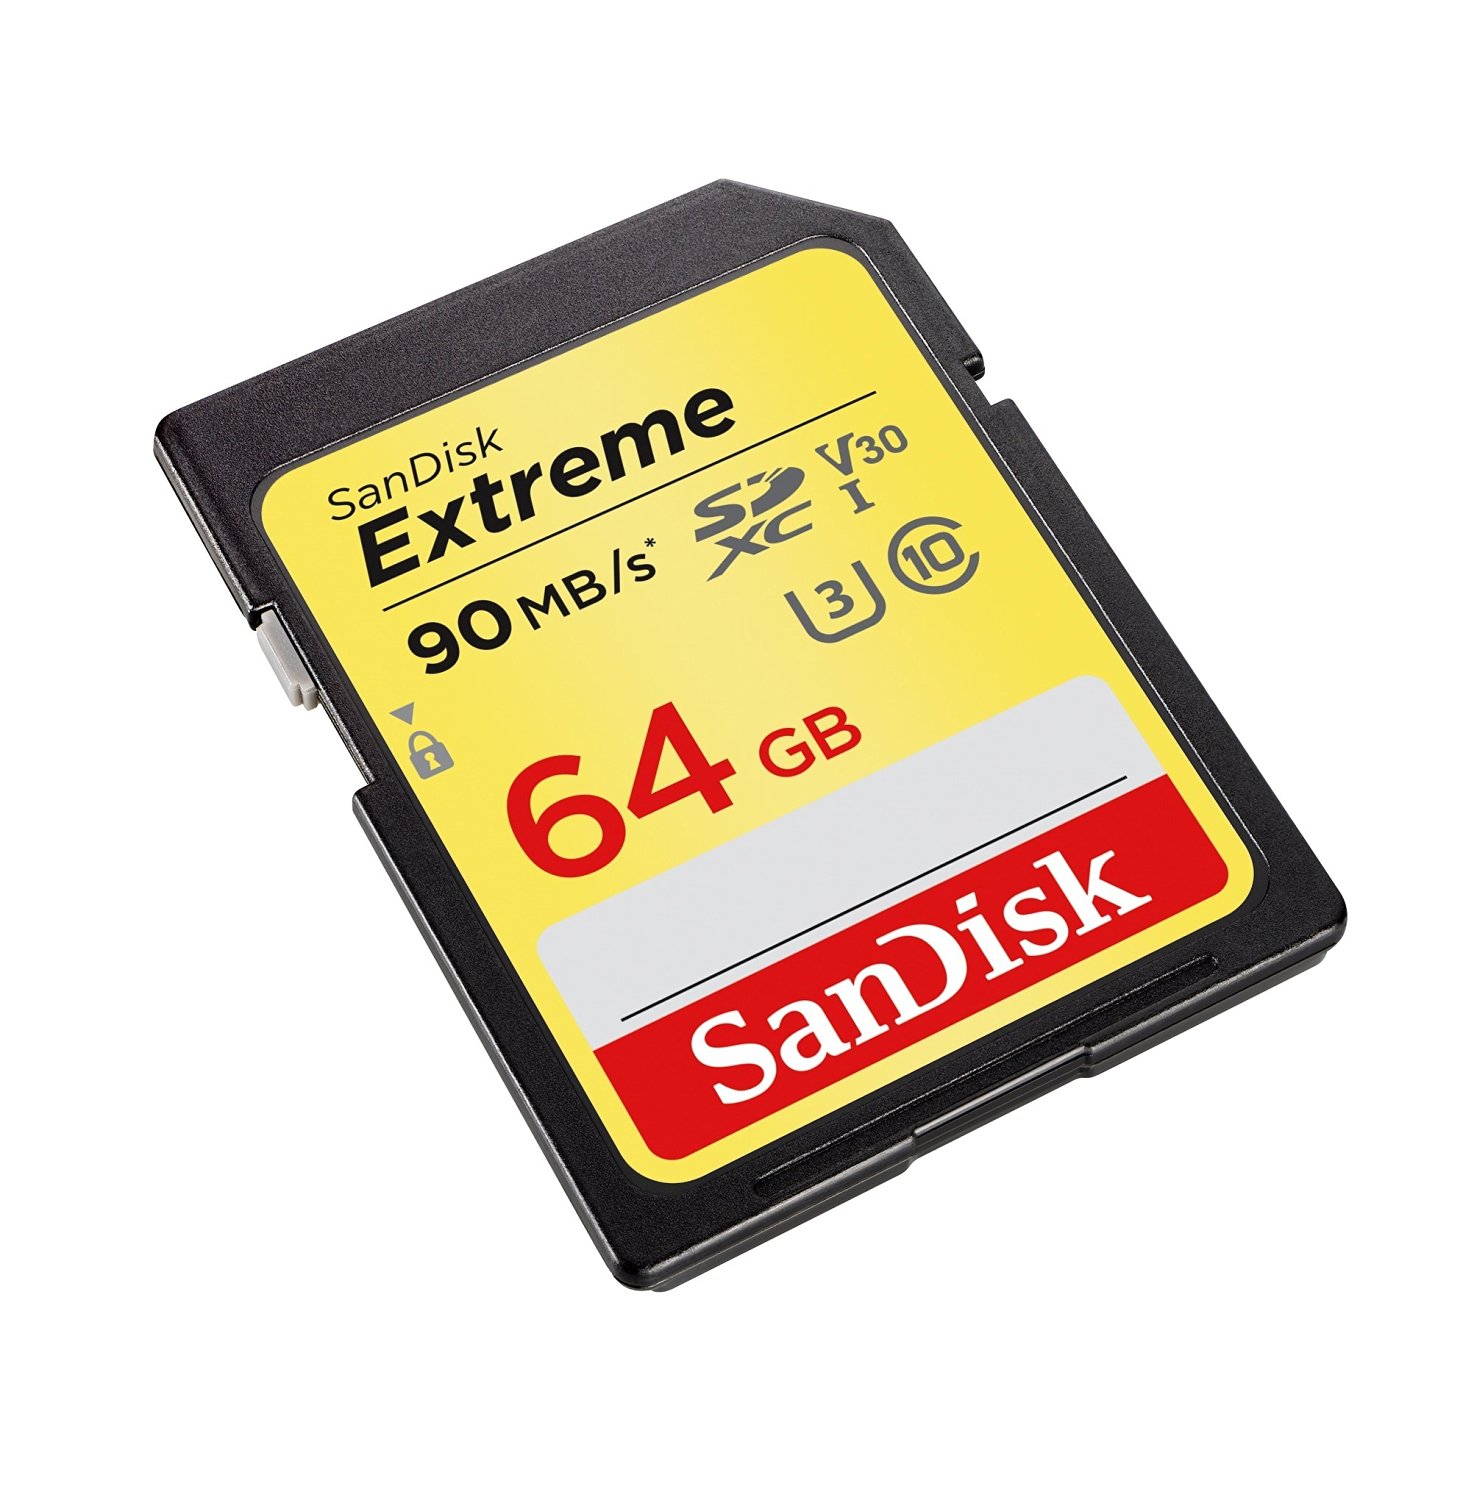 Sandisk Extreme SDXC UHS-I Card 64GB - image 3 of 4